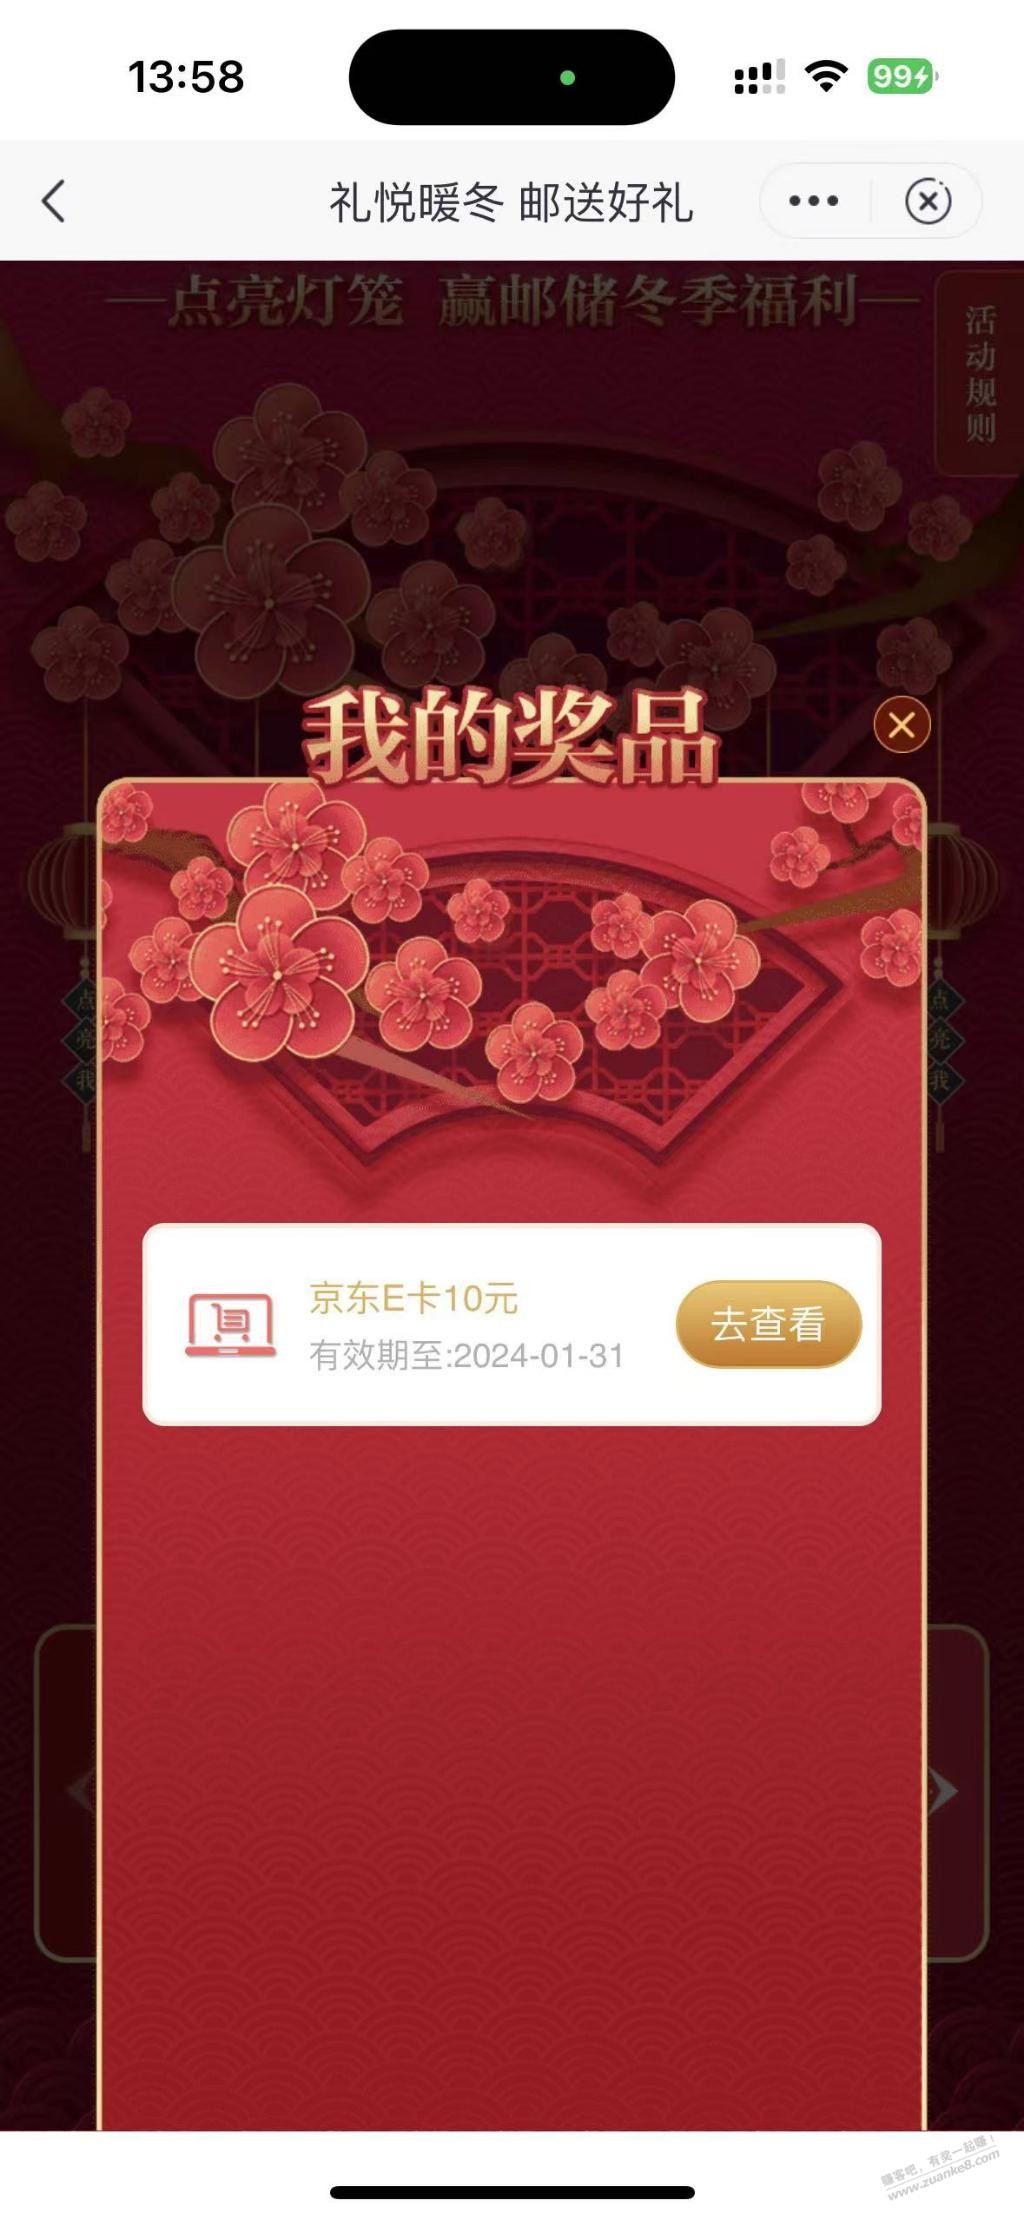 上海邮储礼悦暖冬抽奖-惠小助(52huixz.com)